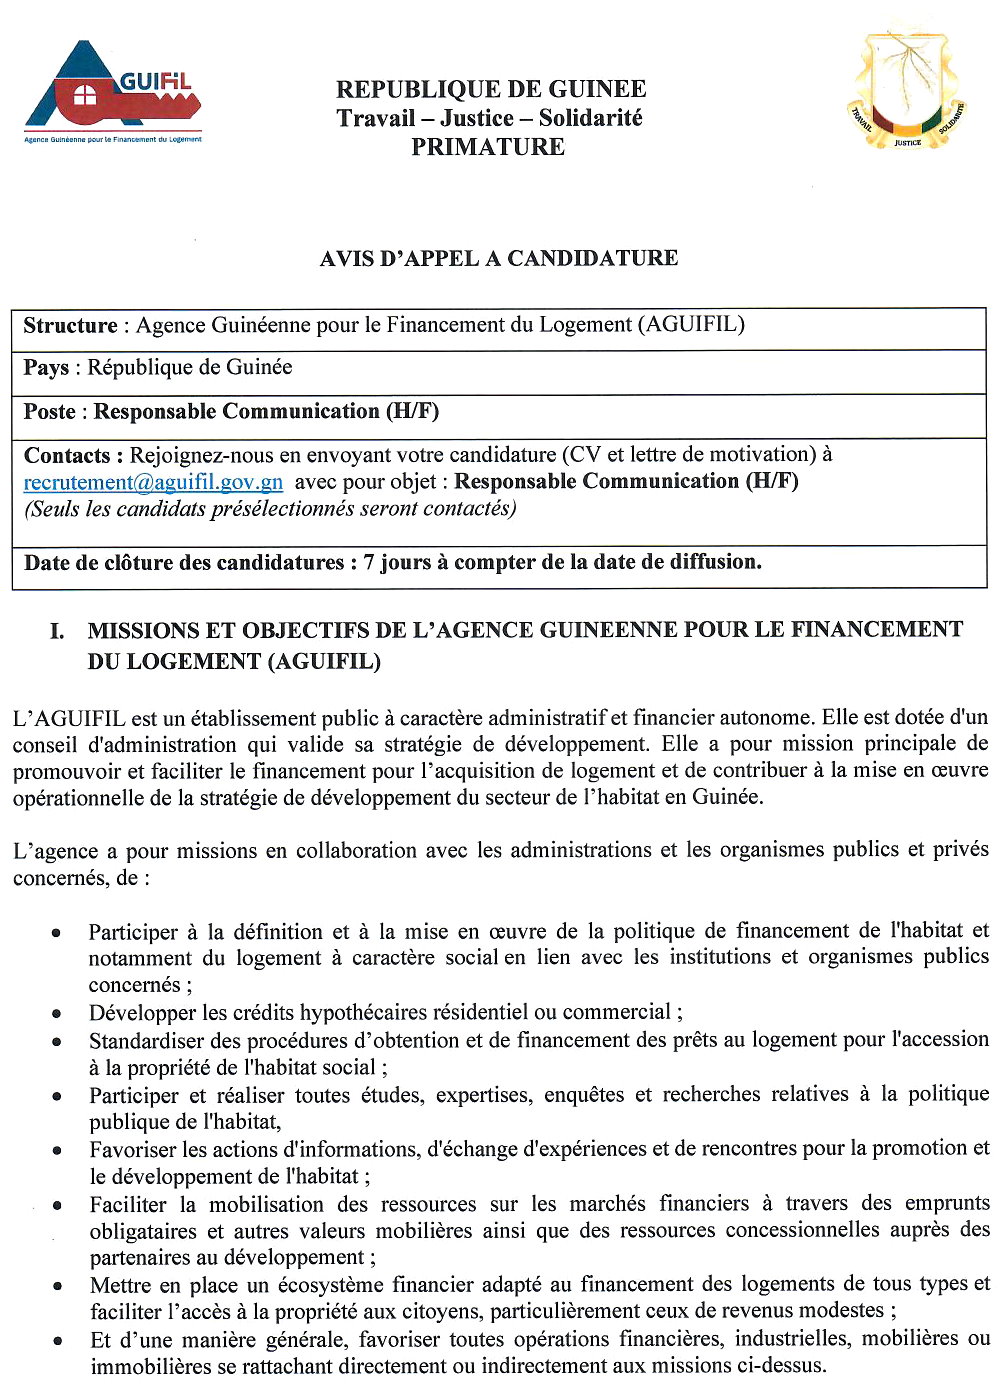 Recrutement en guinée - Aguifil p.1